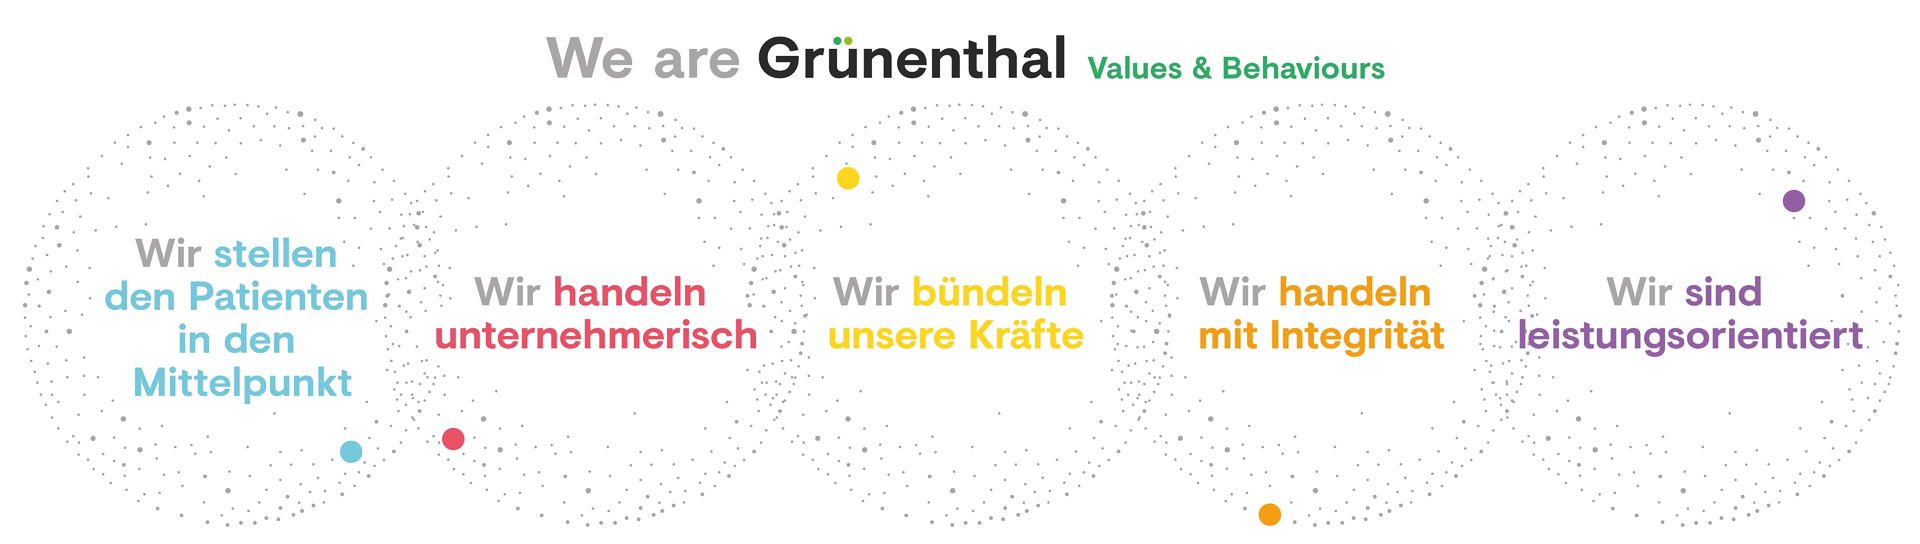 We are Grünenthal  Values & Behaviorus